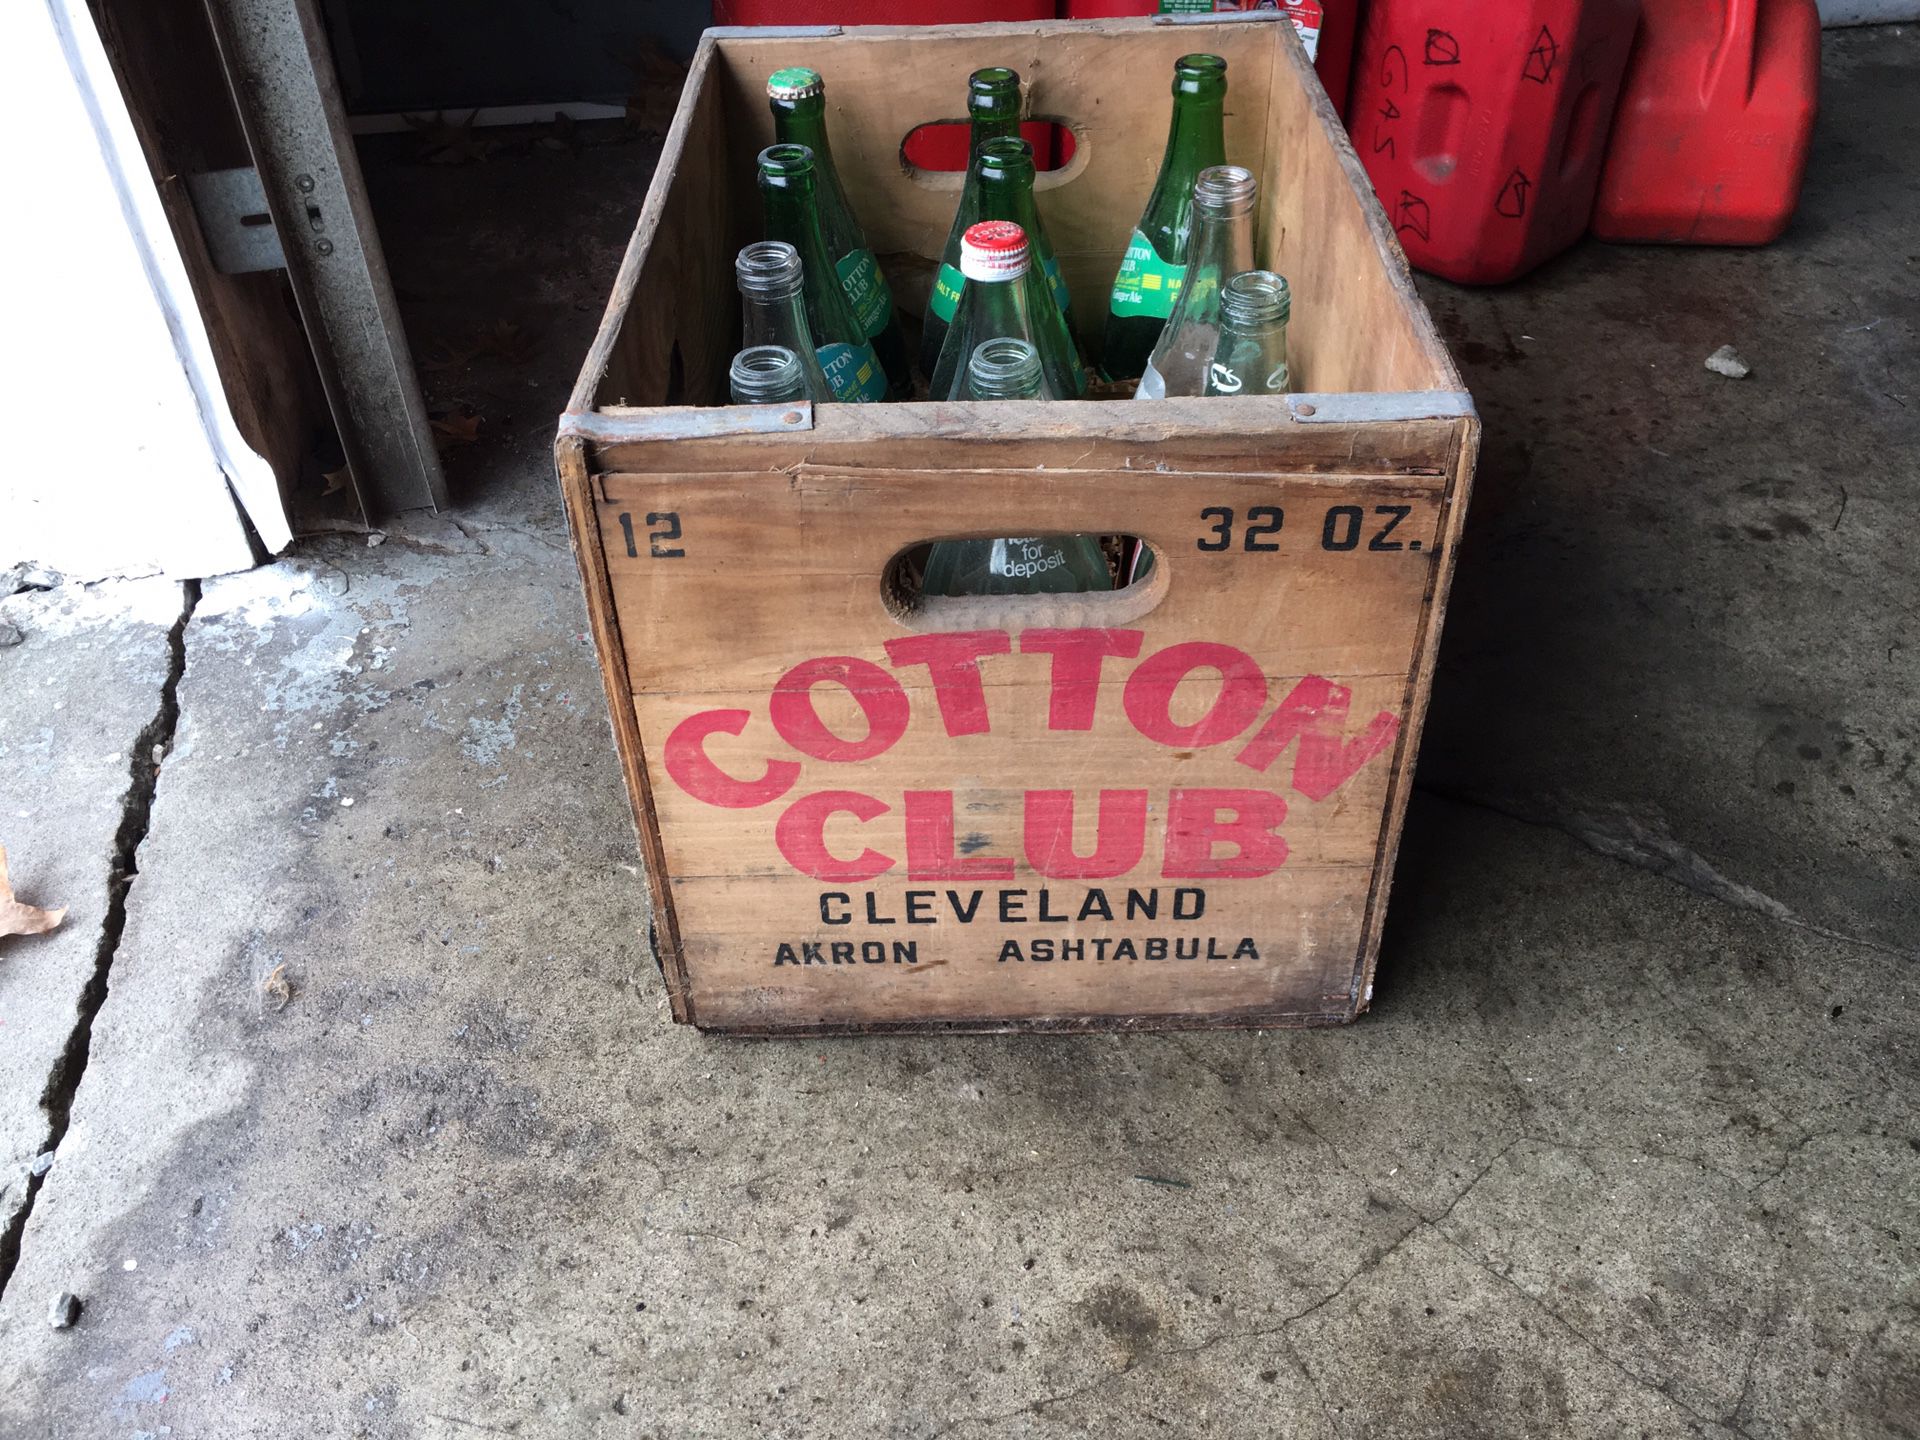 Antique cotton club case with bottles